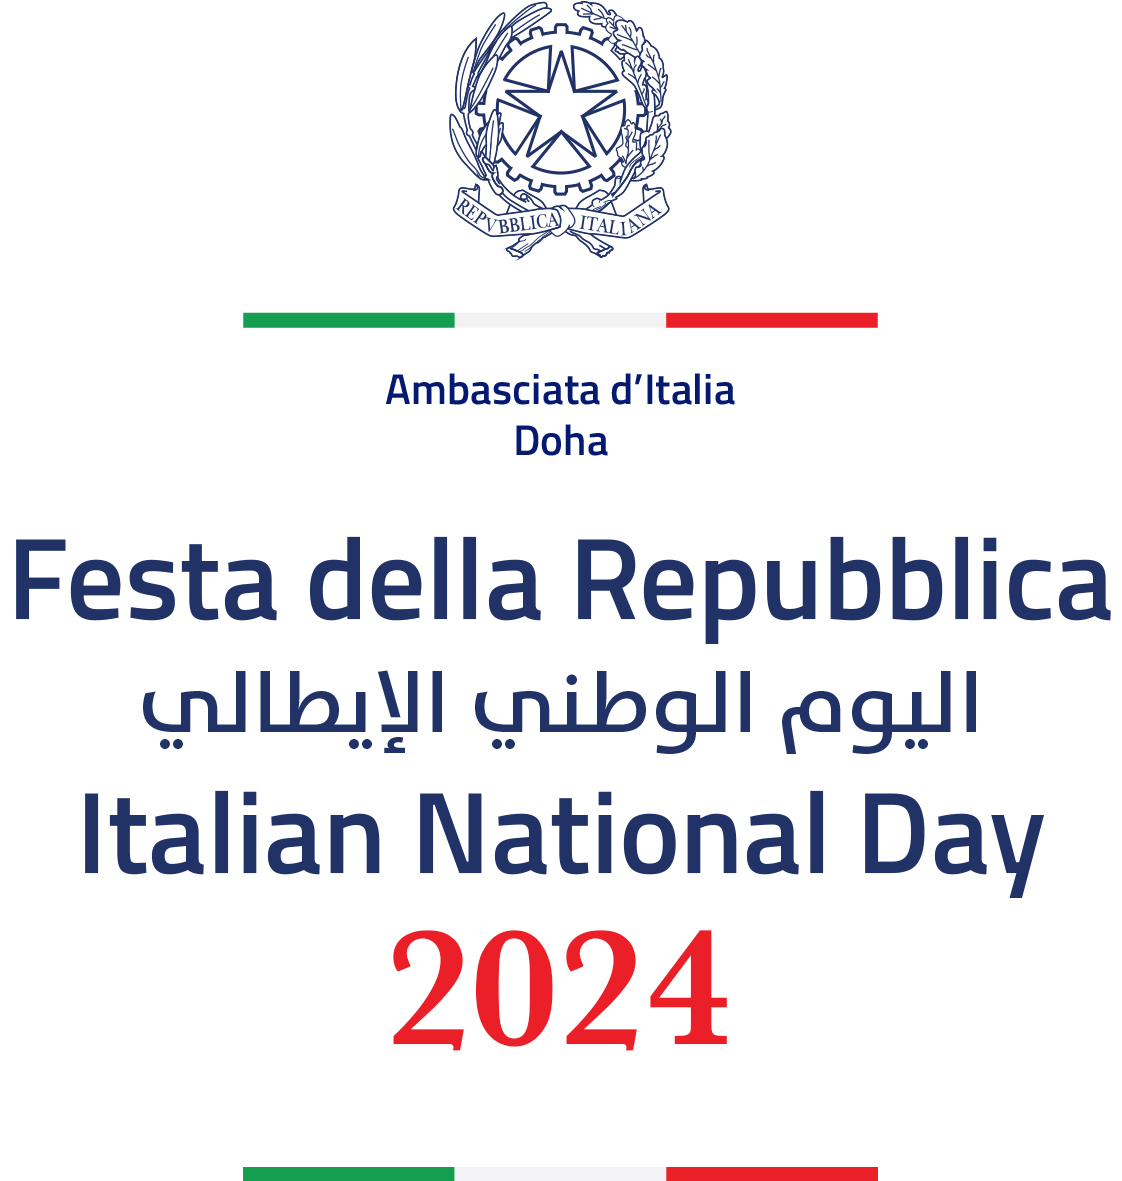 Italian National Day, Repvbblica Italiana